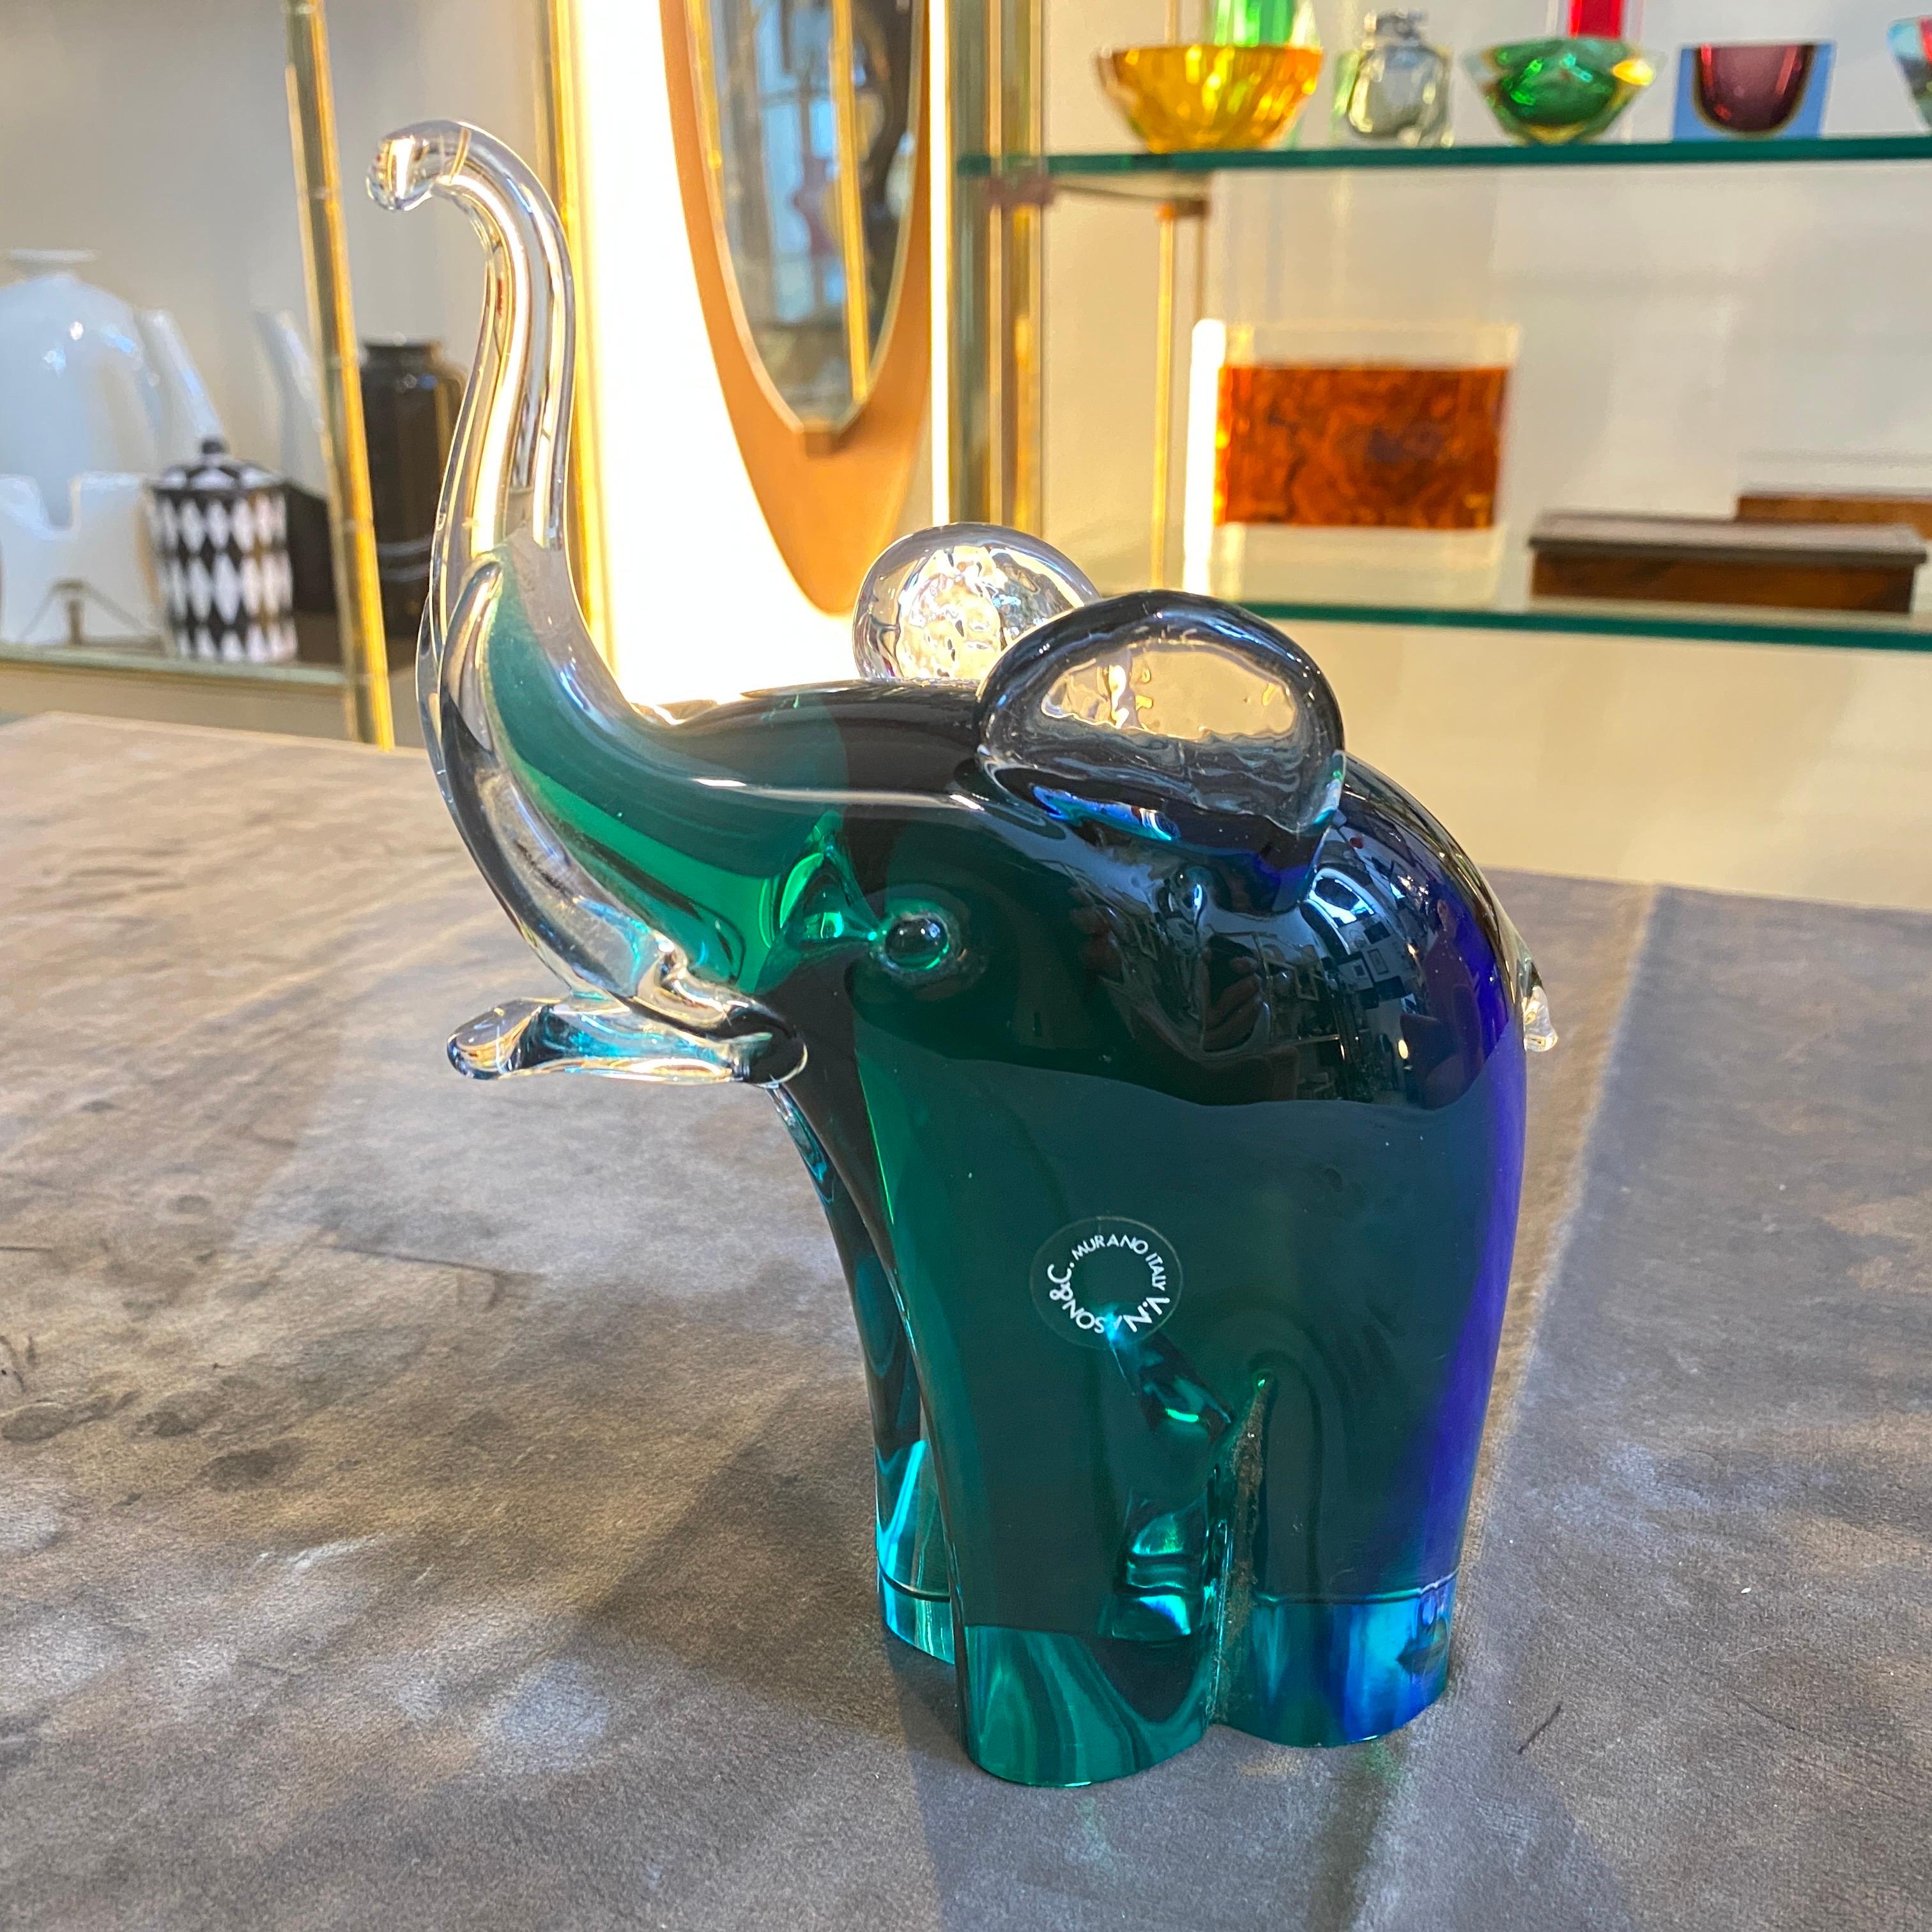 Der Murano-Glaselefant ist auf einer Seite beschriftet und befindet sich in perfektem Zustand. Der blaue und grüne Sommerso-Elefant aus Murano-Glas, entworfen und hergestellt von Vincenzo Nason, ist ein atemberaubendes Kunstwerk, das die